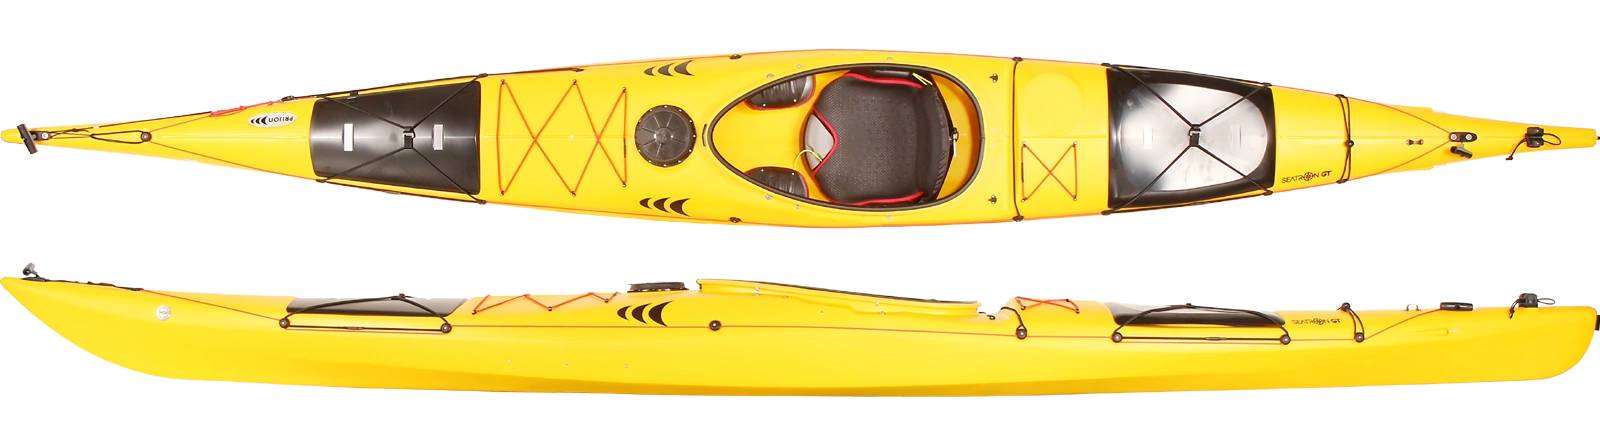 Seatron GT kayak.